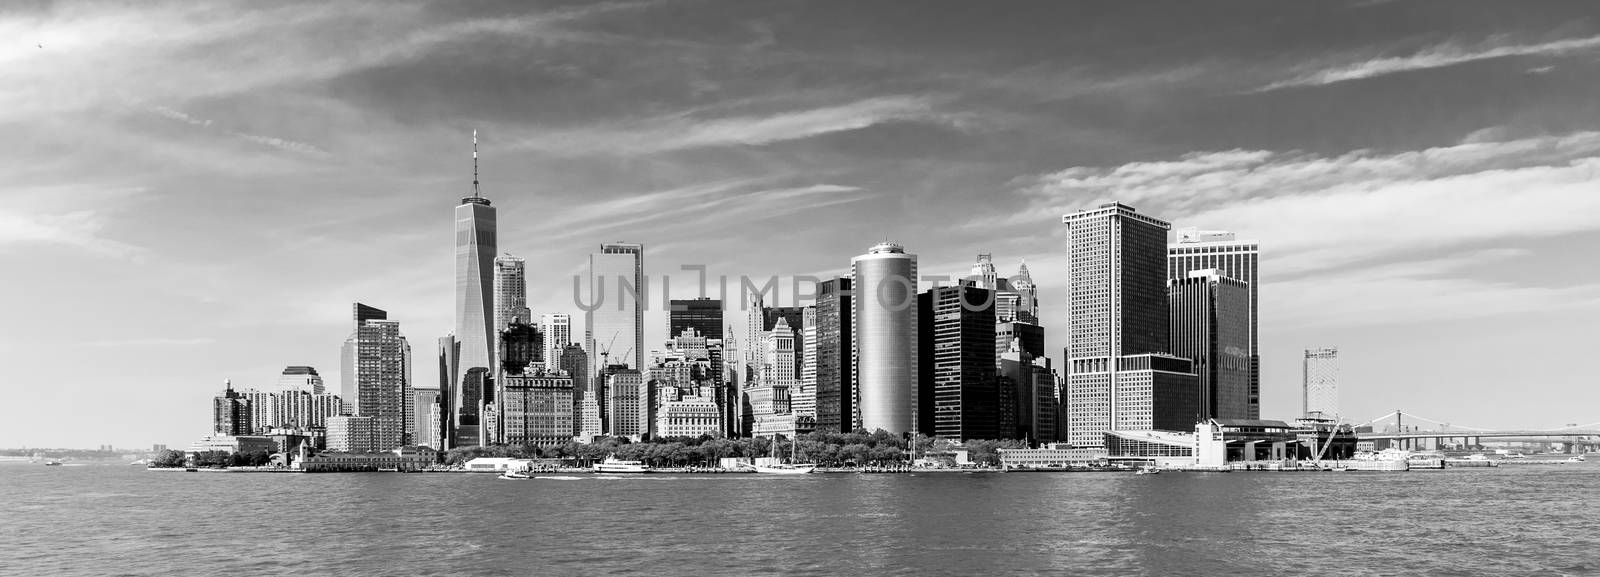 Panoramic view of Lower Manhattan, New York City, USA. Black and white image.